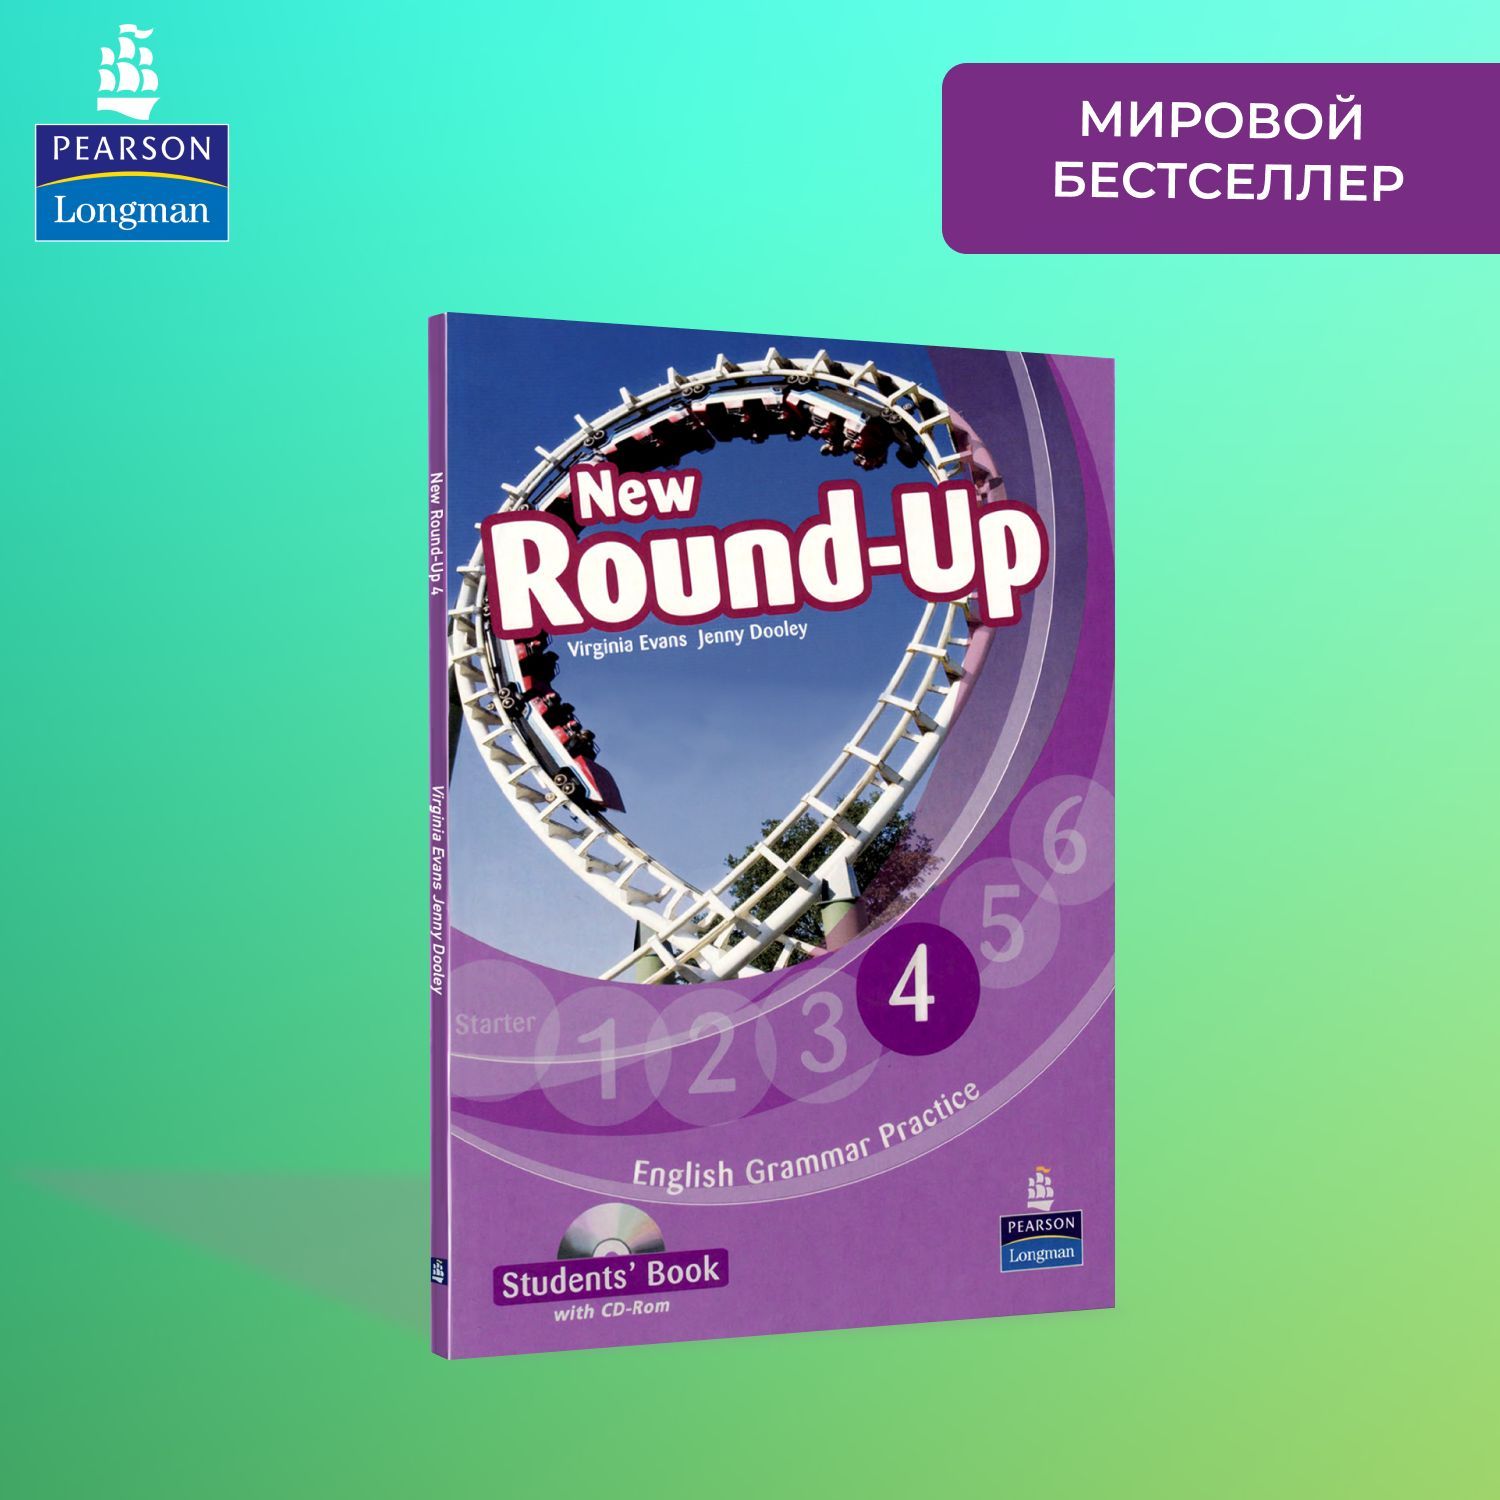 Учебник new round up. Round up 4 Virginia Evans Longman. New Round up Starter students book. New Round up 4.